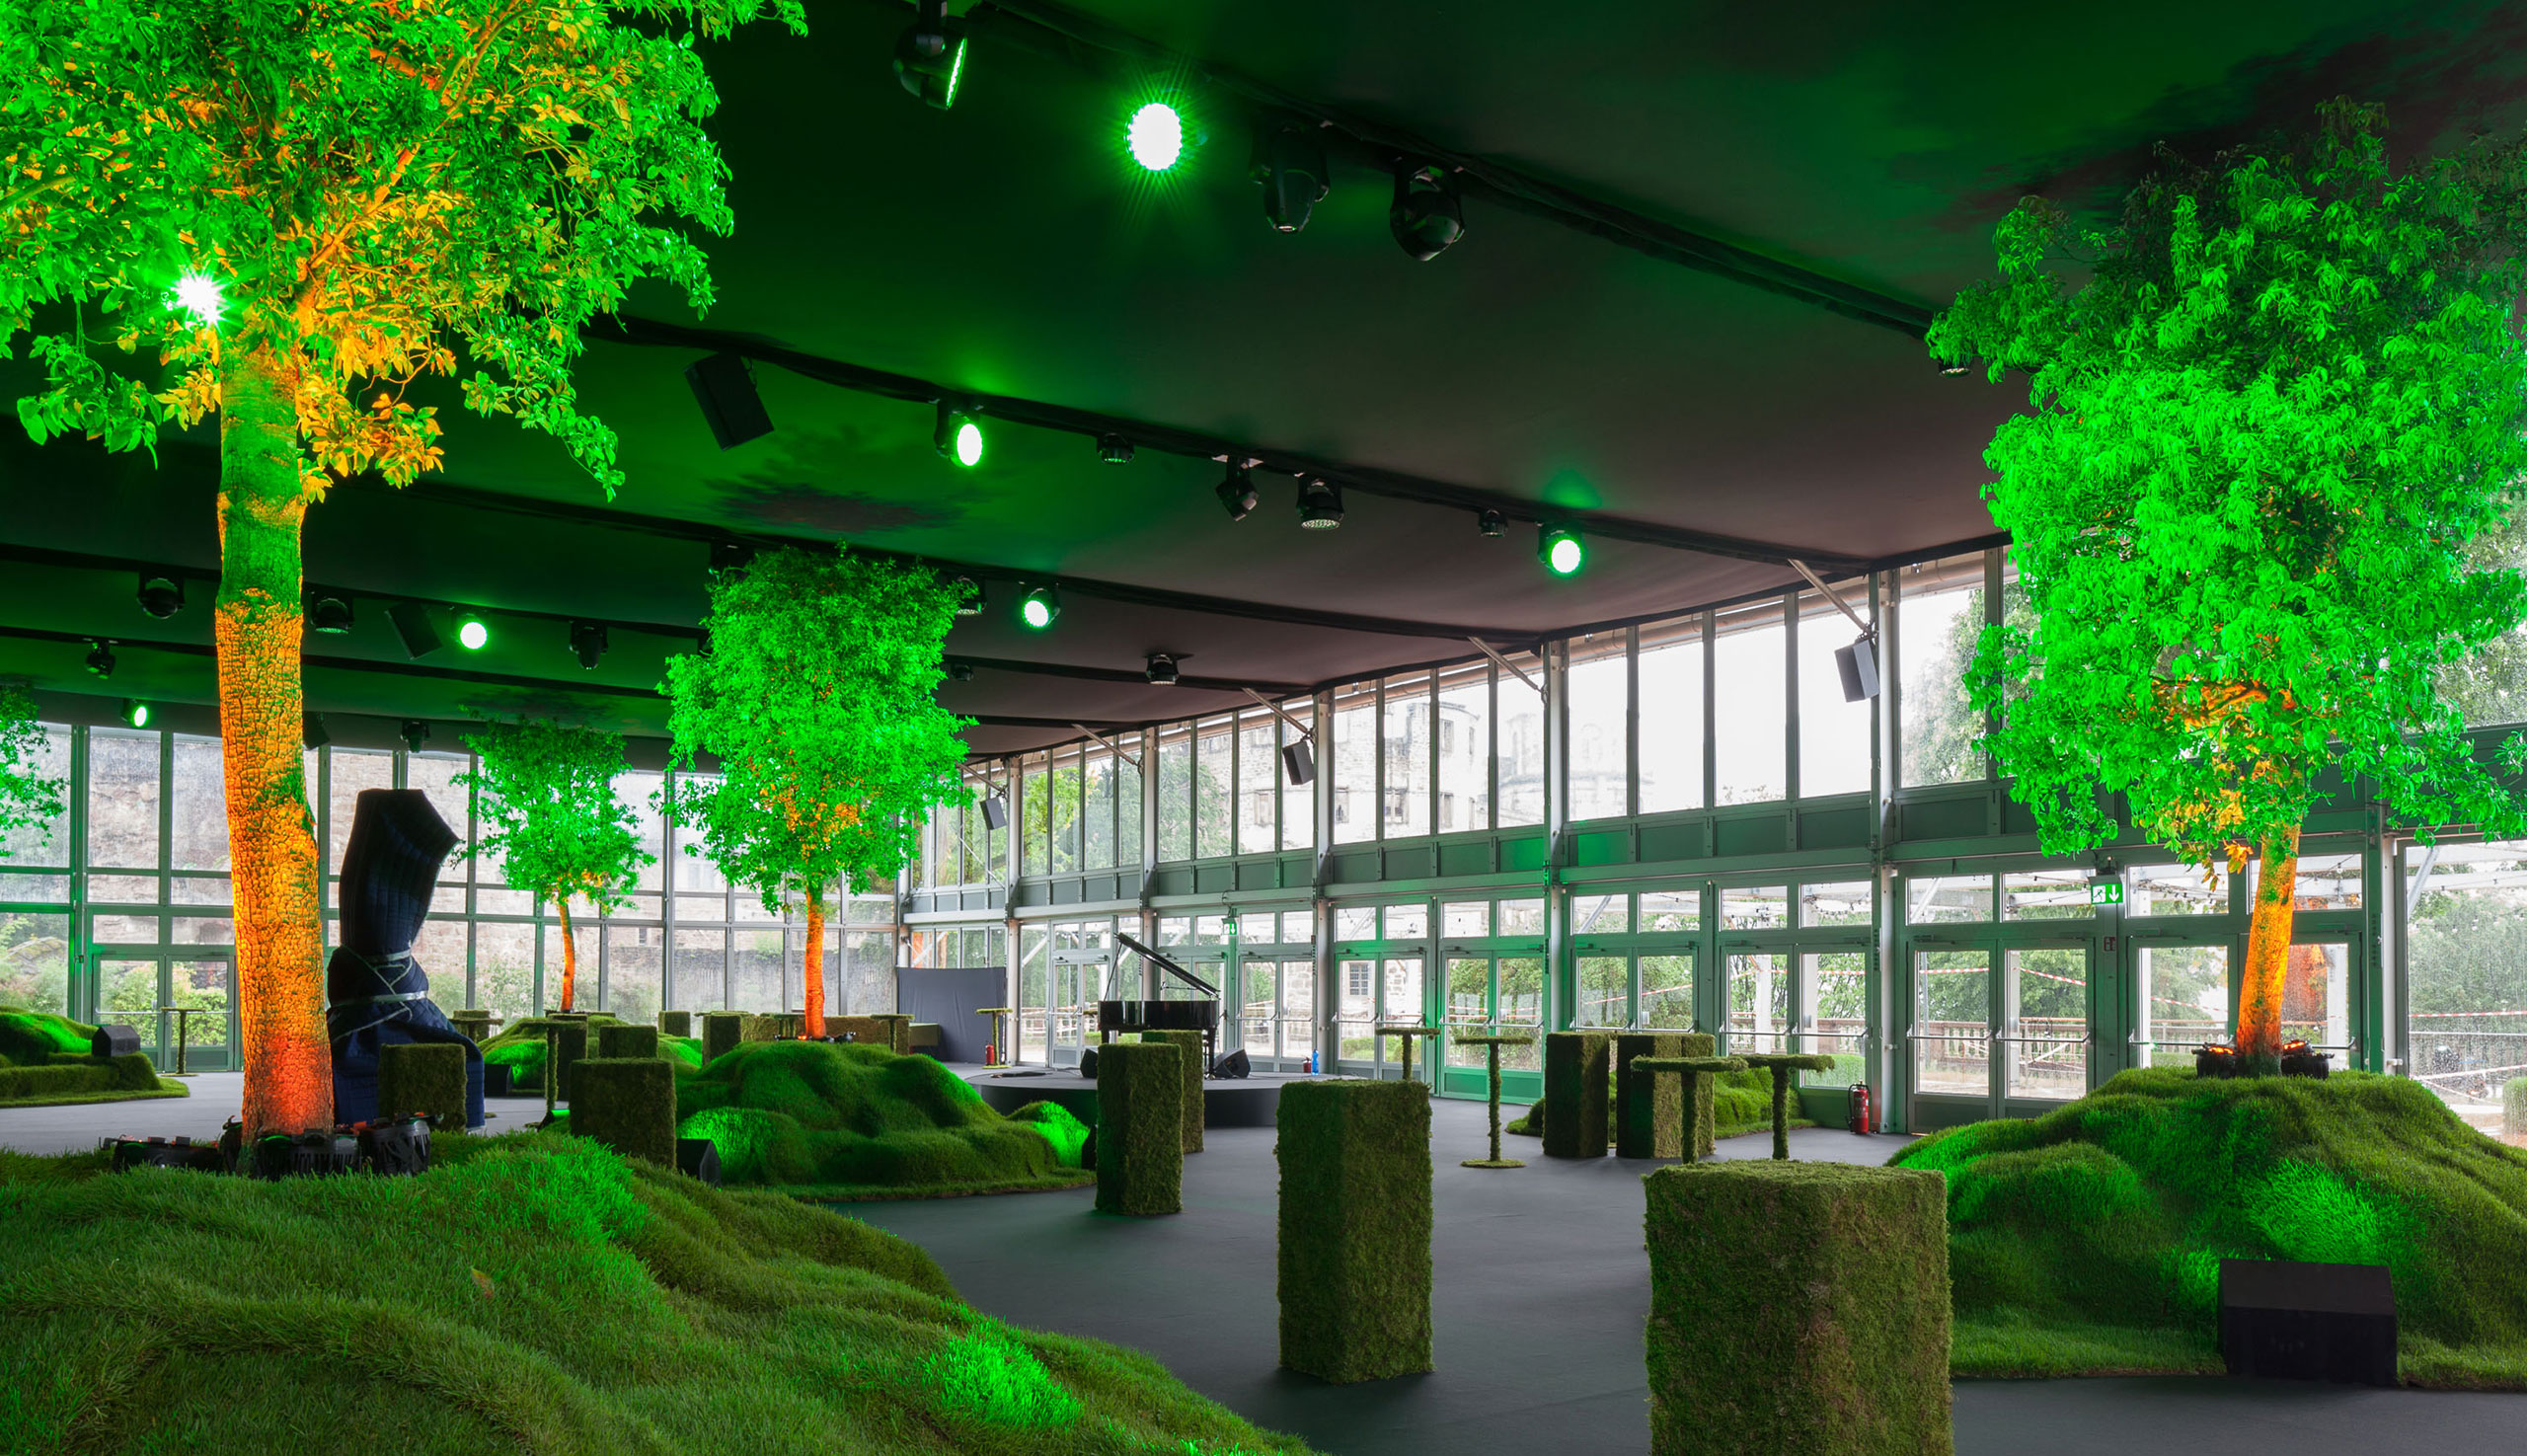 Vue intérieure du showroom avec des arbres éclairés en vert